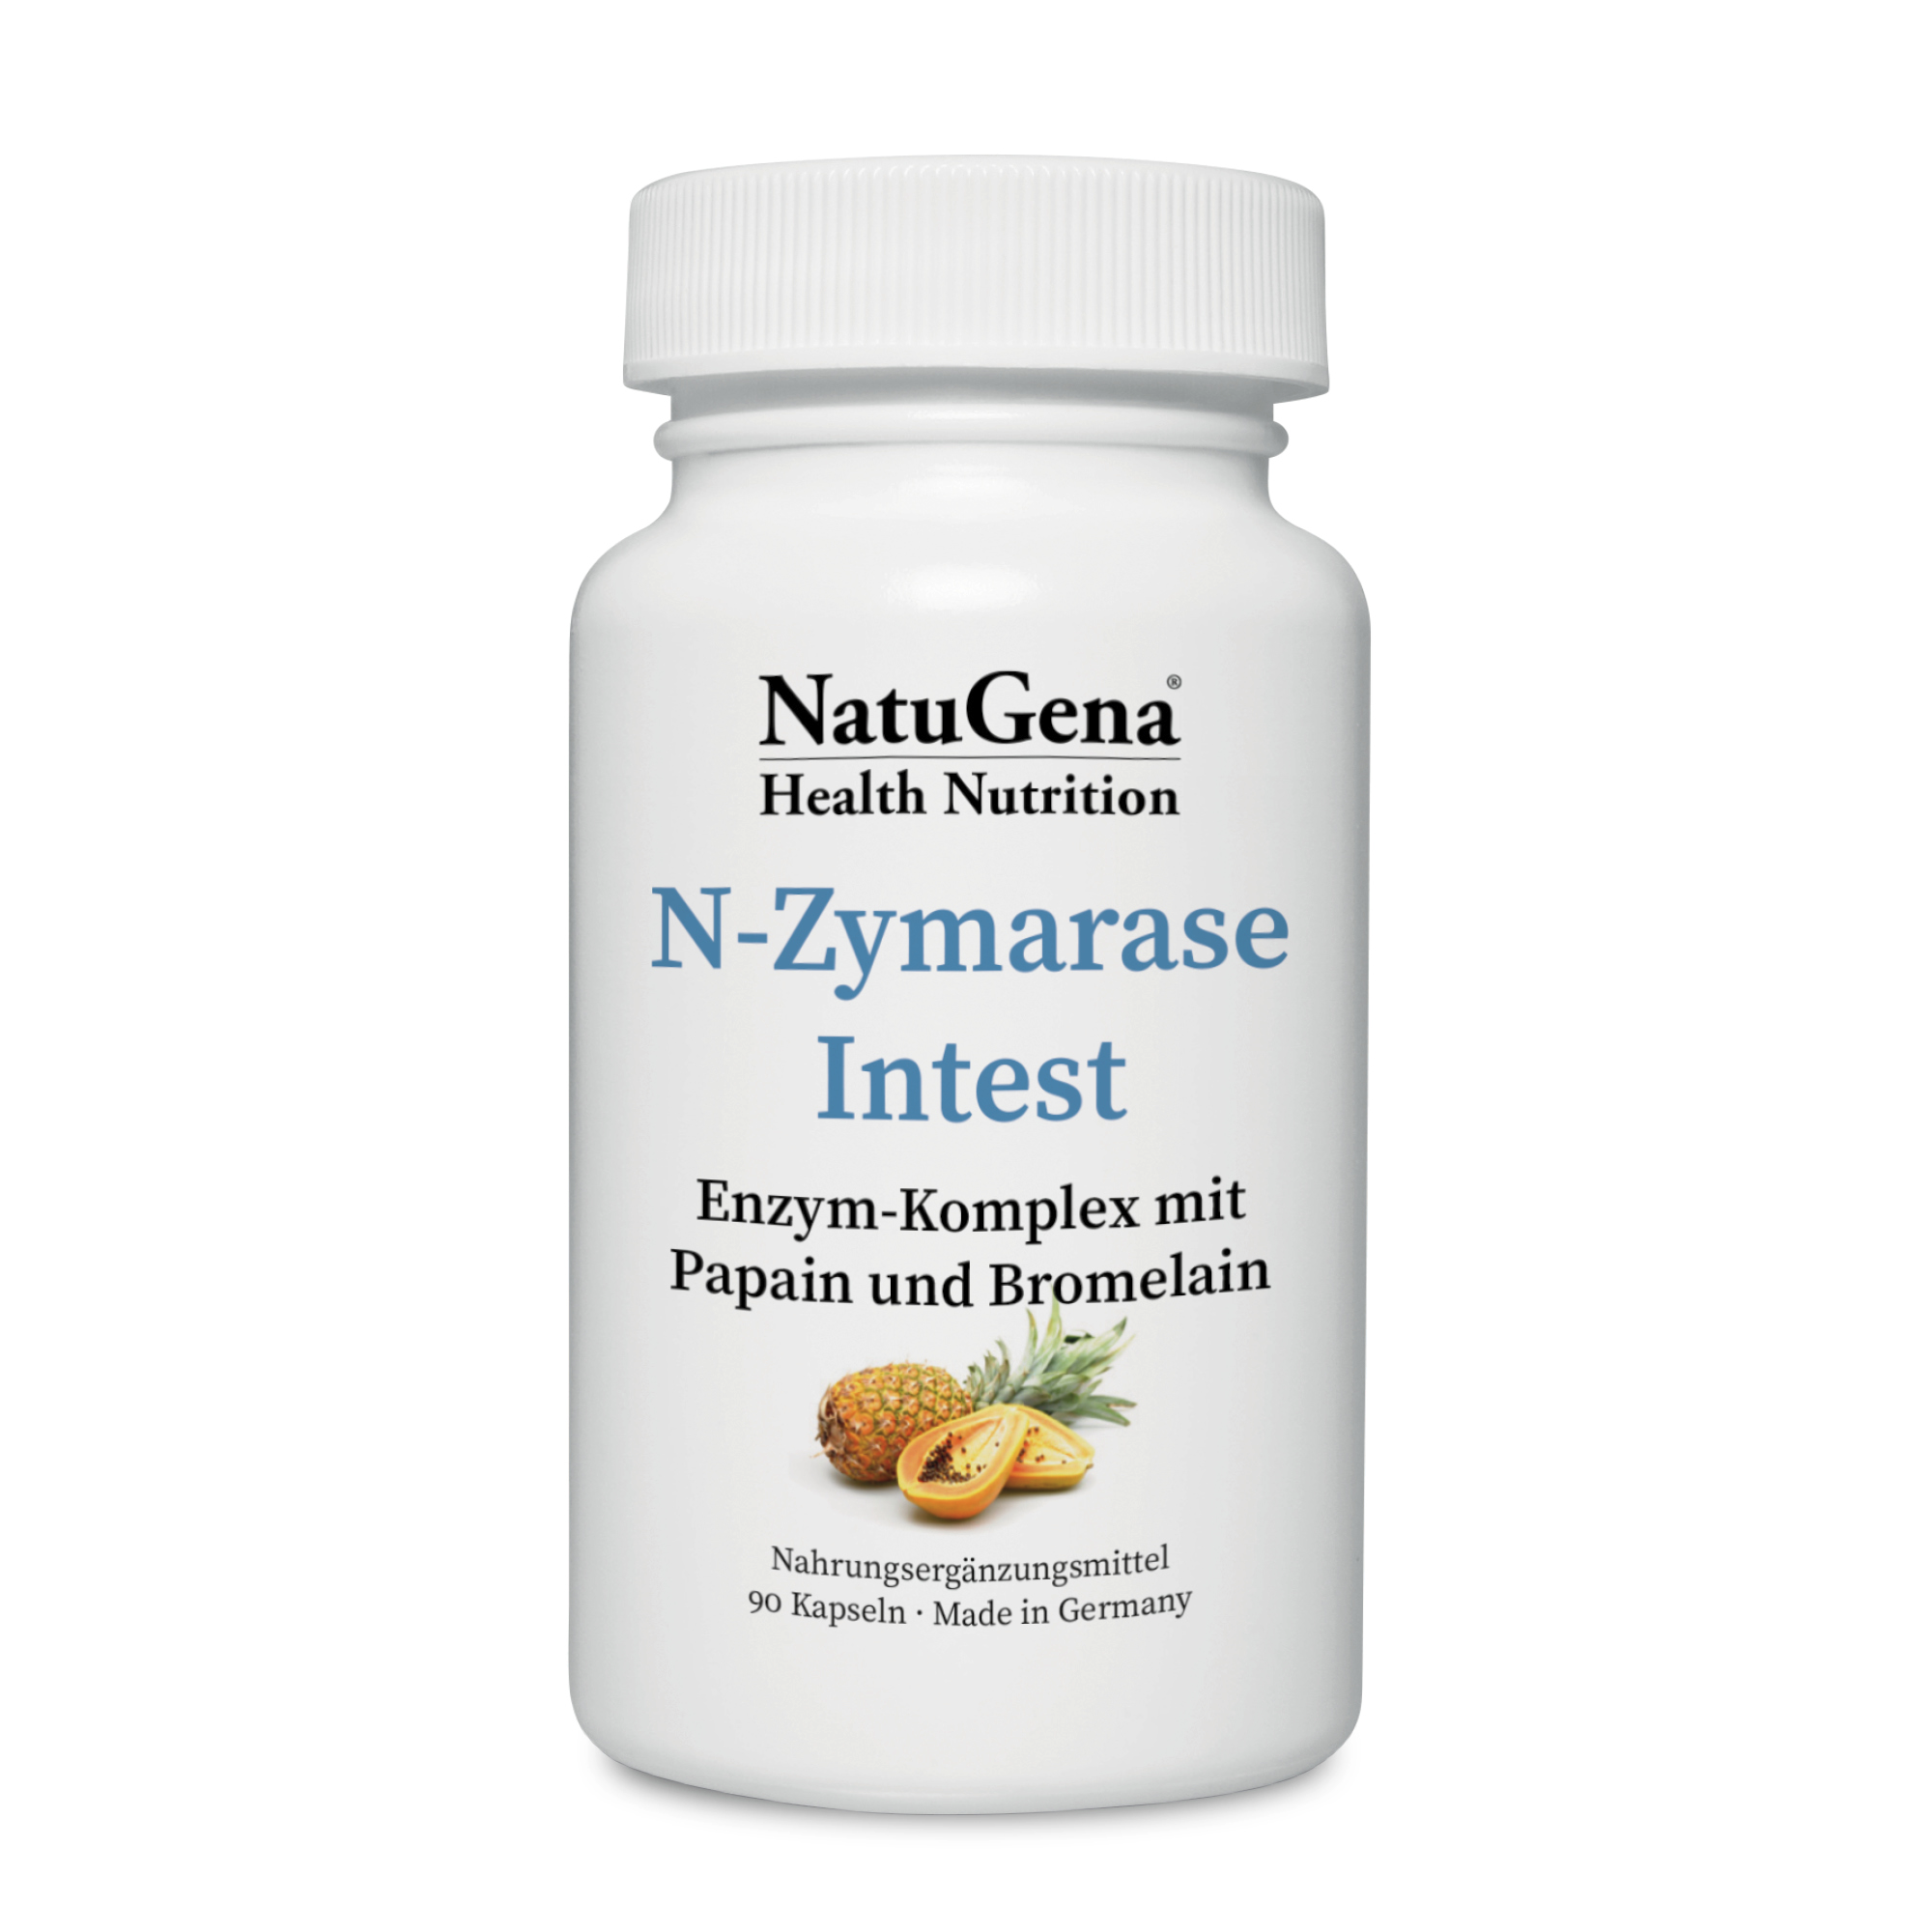 NatuGena N-Zymarase Intest | 90 Kapseln | Hochwirksamer Enzymkomplex für Verdauung und Stoffwechselunterstützung